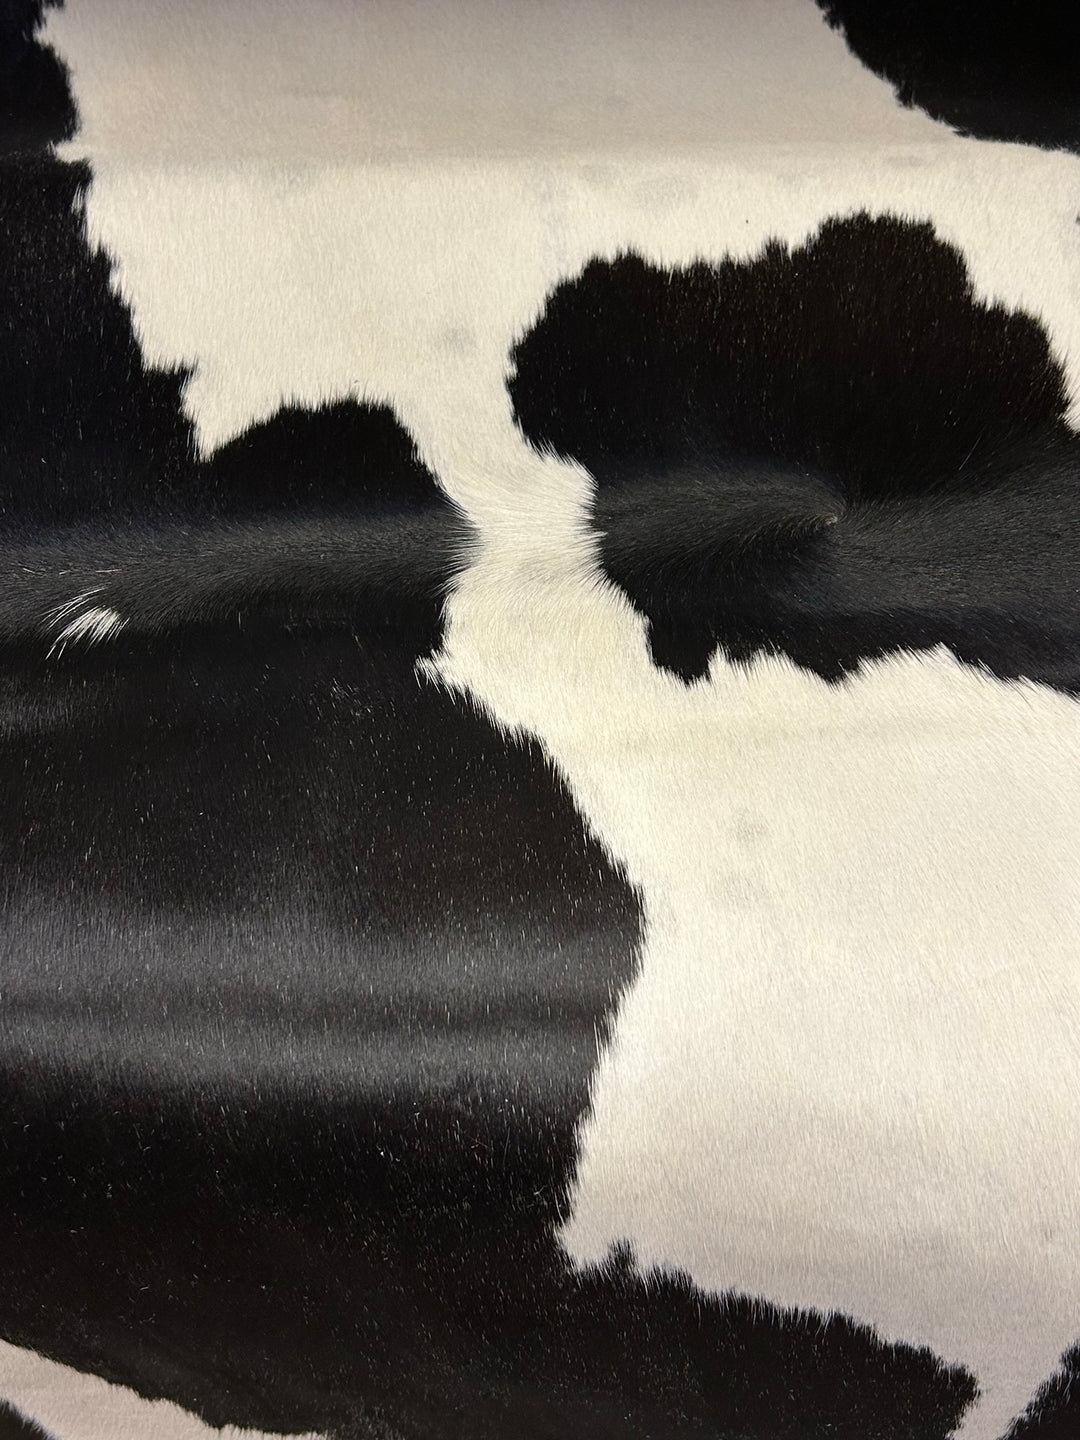 Natural Cow Hide, Black & White Cow Hide, 2m -3m